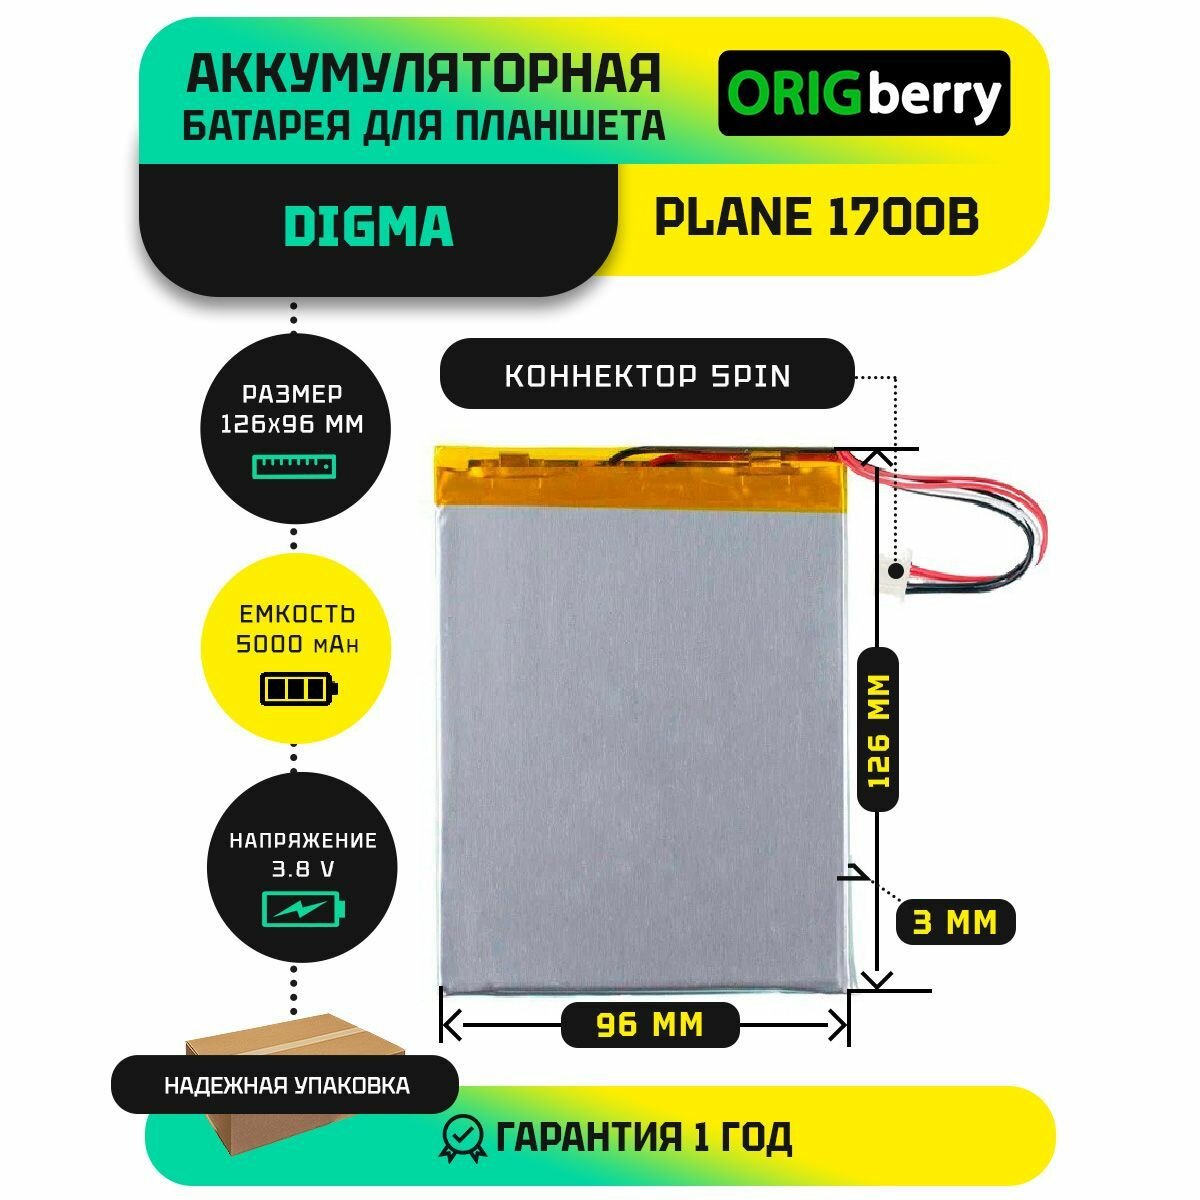 Аккумулятор для планшета Digma Plane 1700B 4G (PS1011ML) 3,8 V / 5000 mAh / 126мм x 96мм x 3мм / коннектор 5 PIN